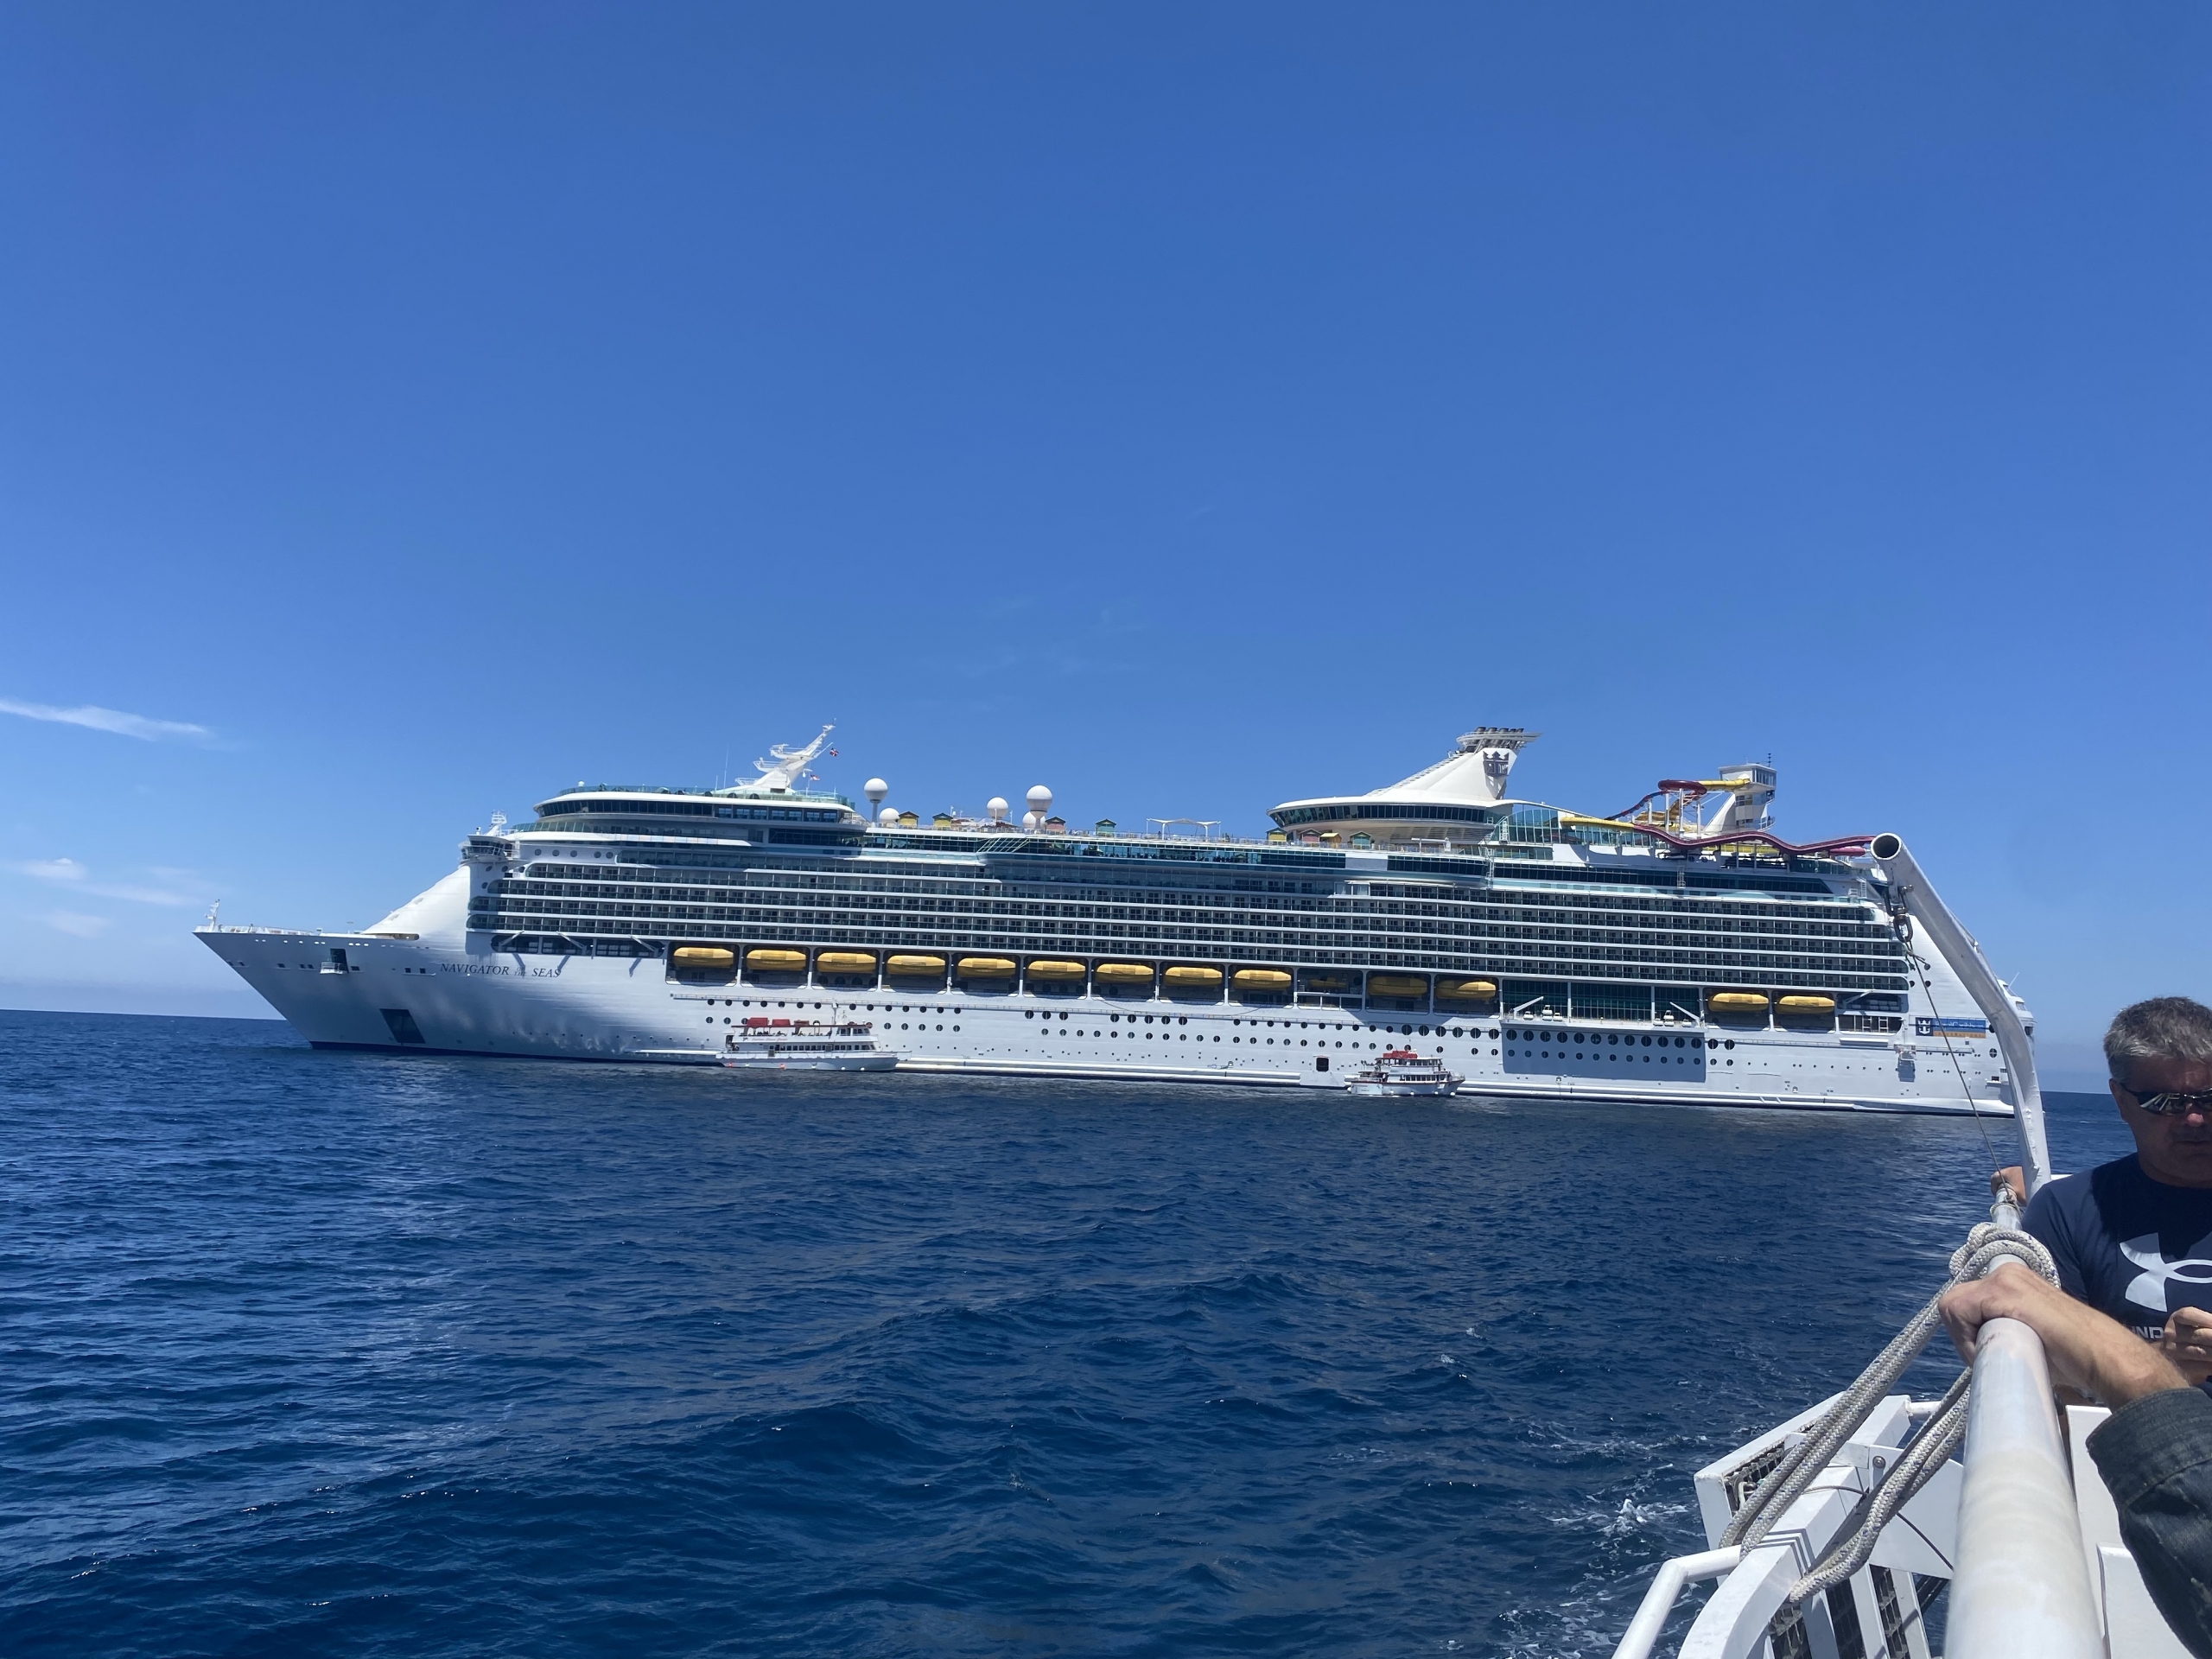 Catalina island cruise ship